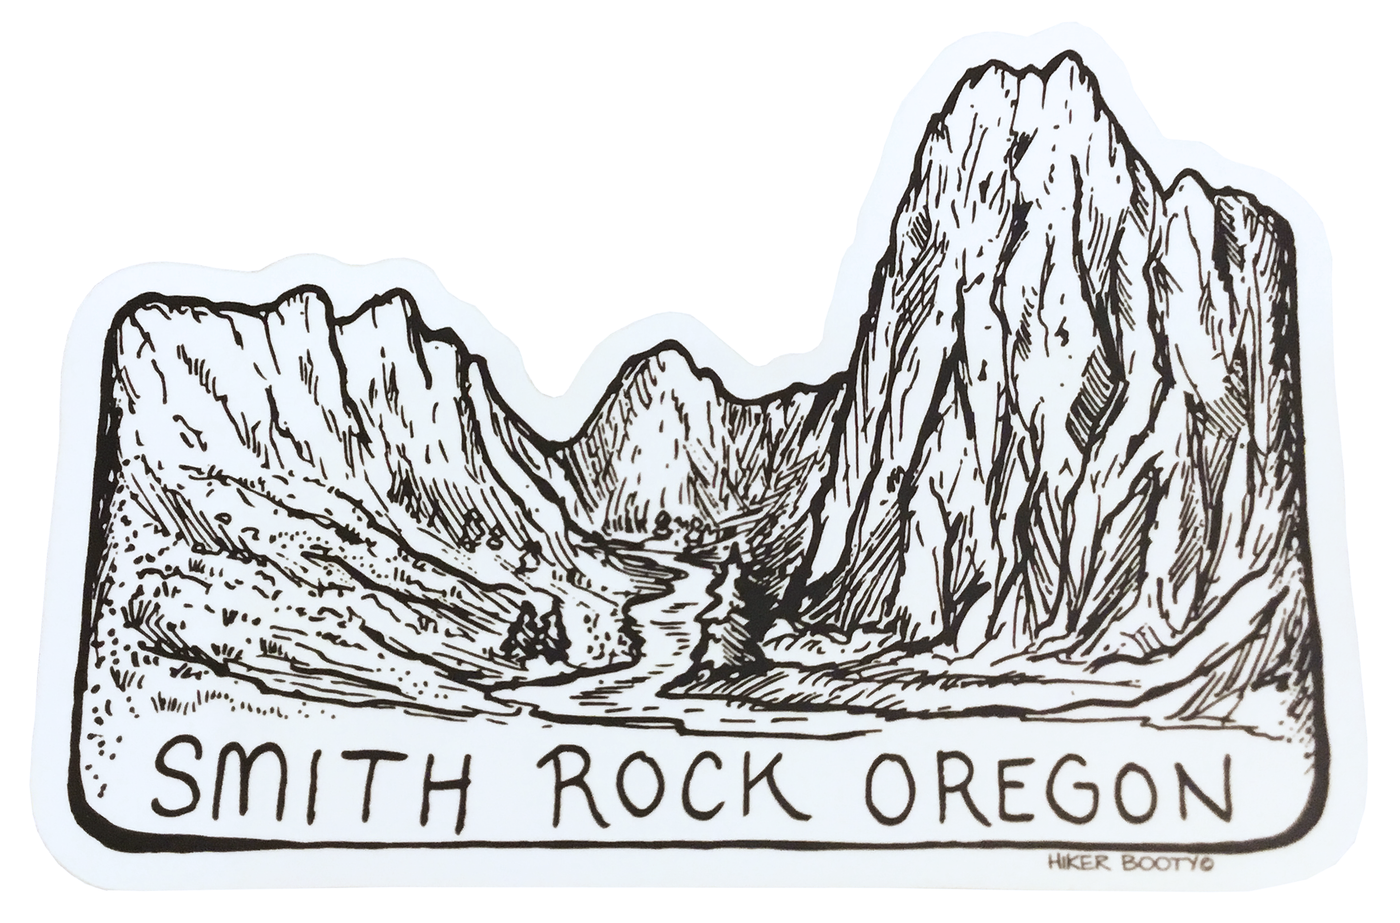 Smith Rock Sticker